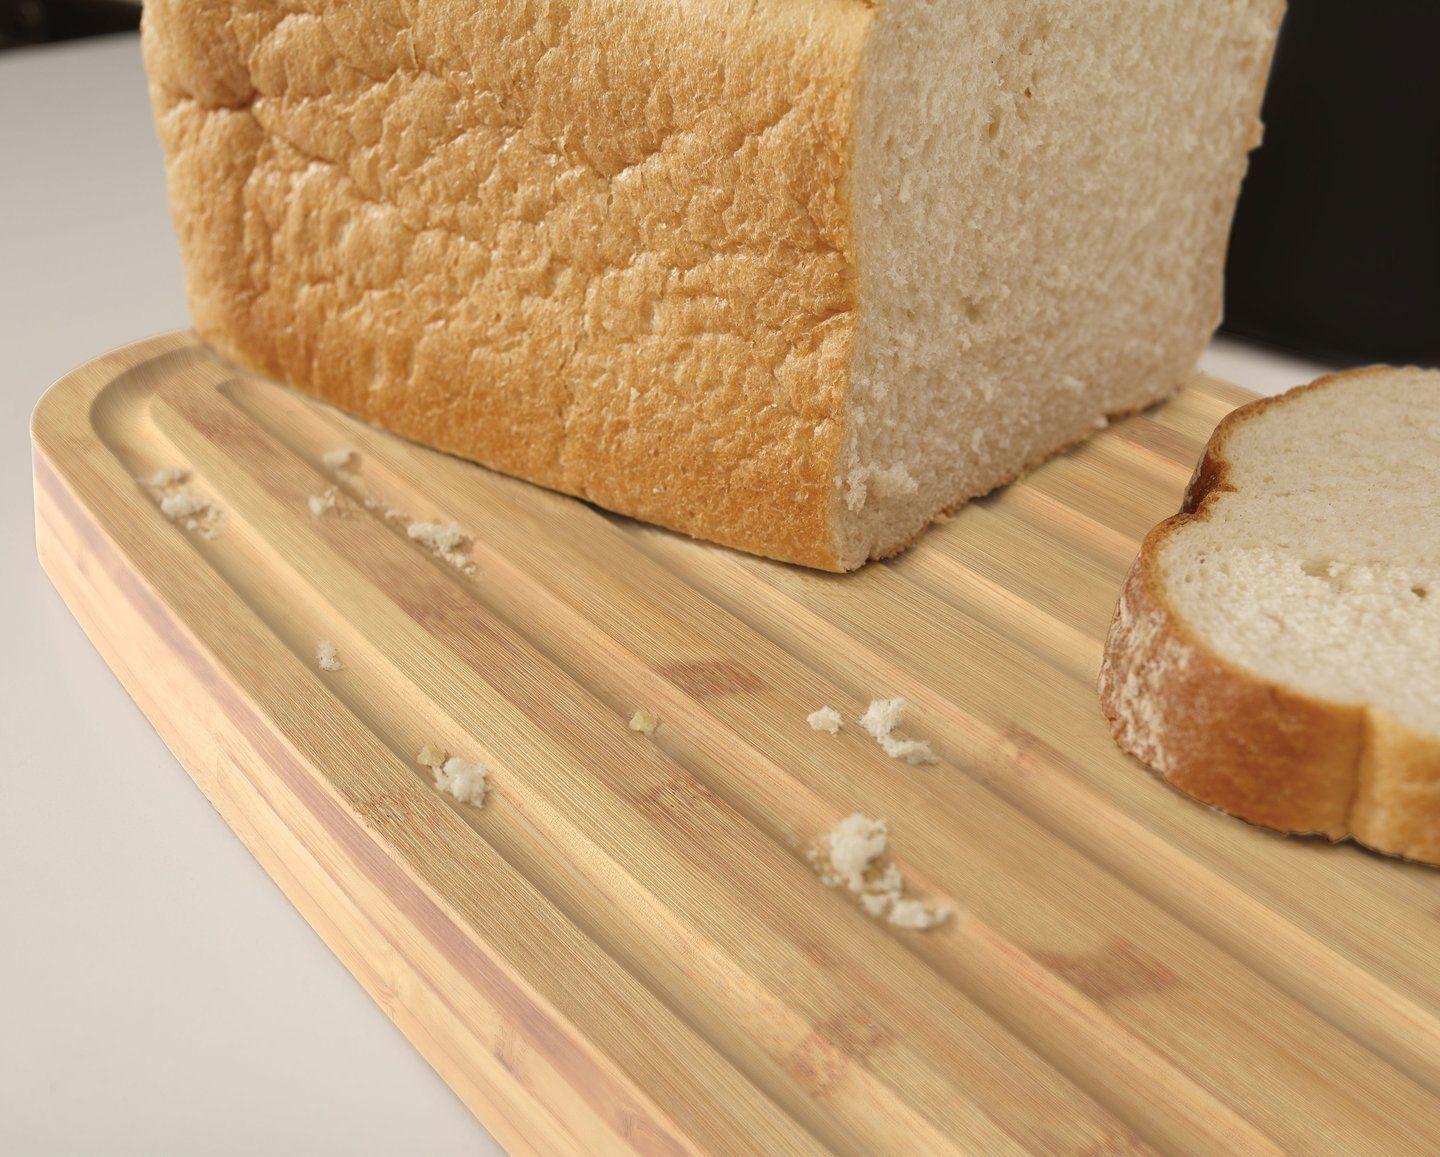 Joseph Joseph Bamboo Bread and cutting board, white